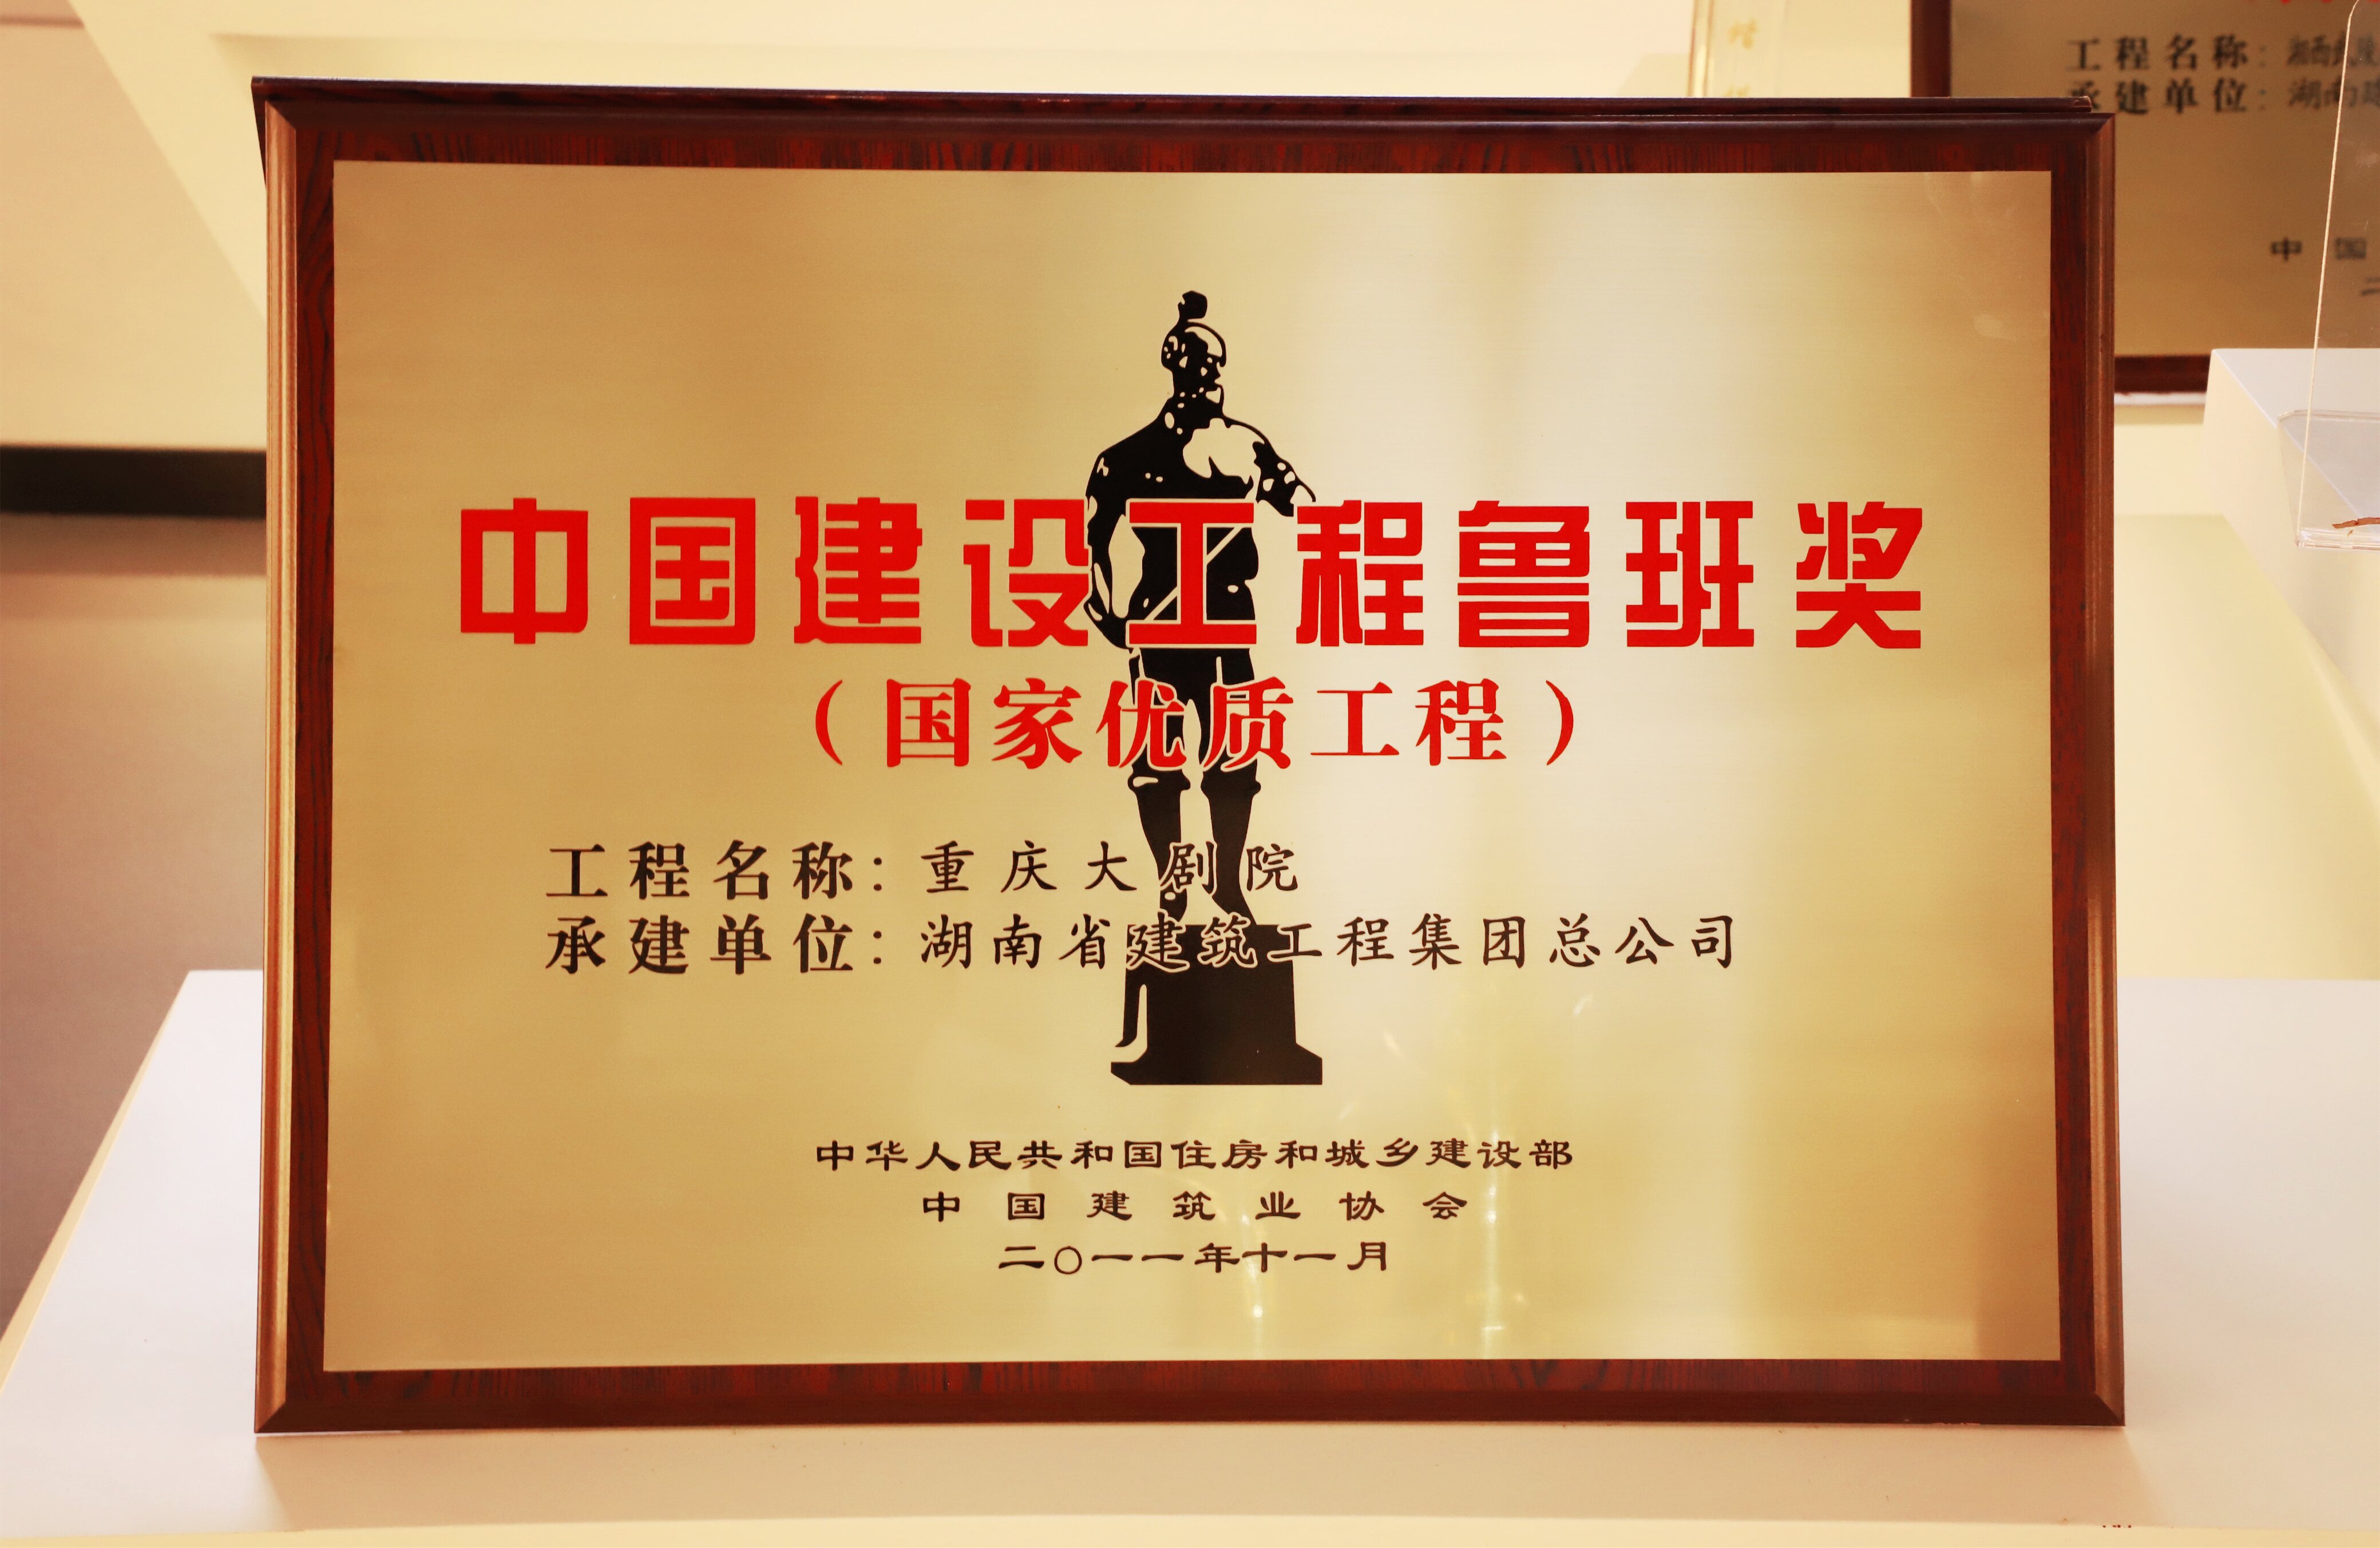 中国建设工程鲁班奖 